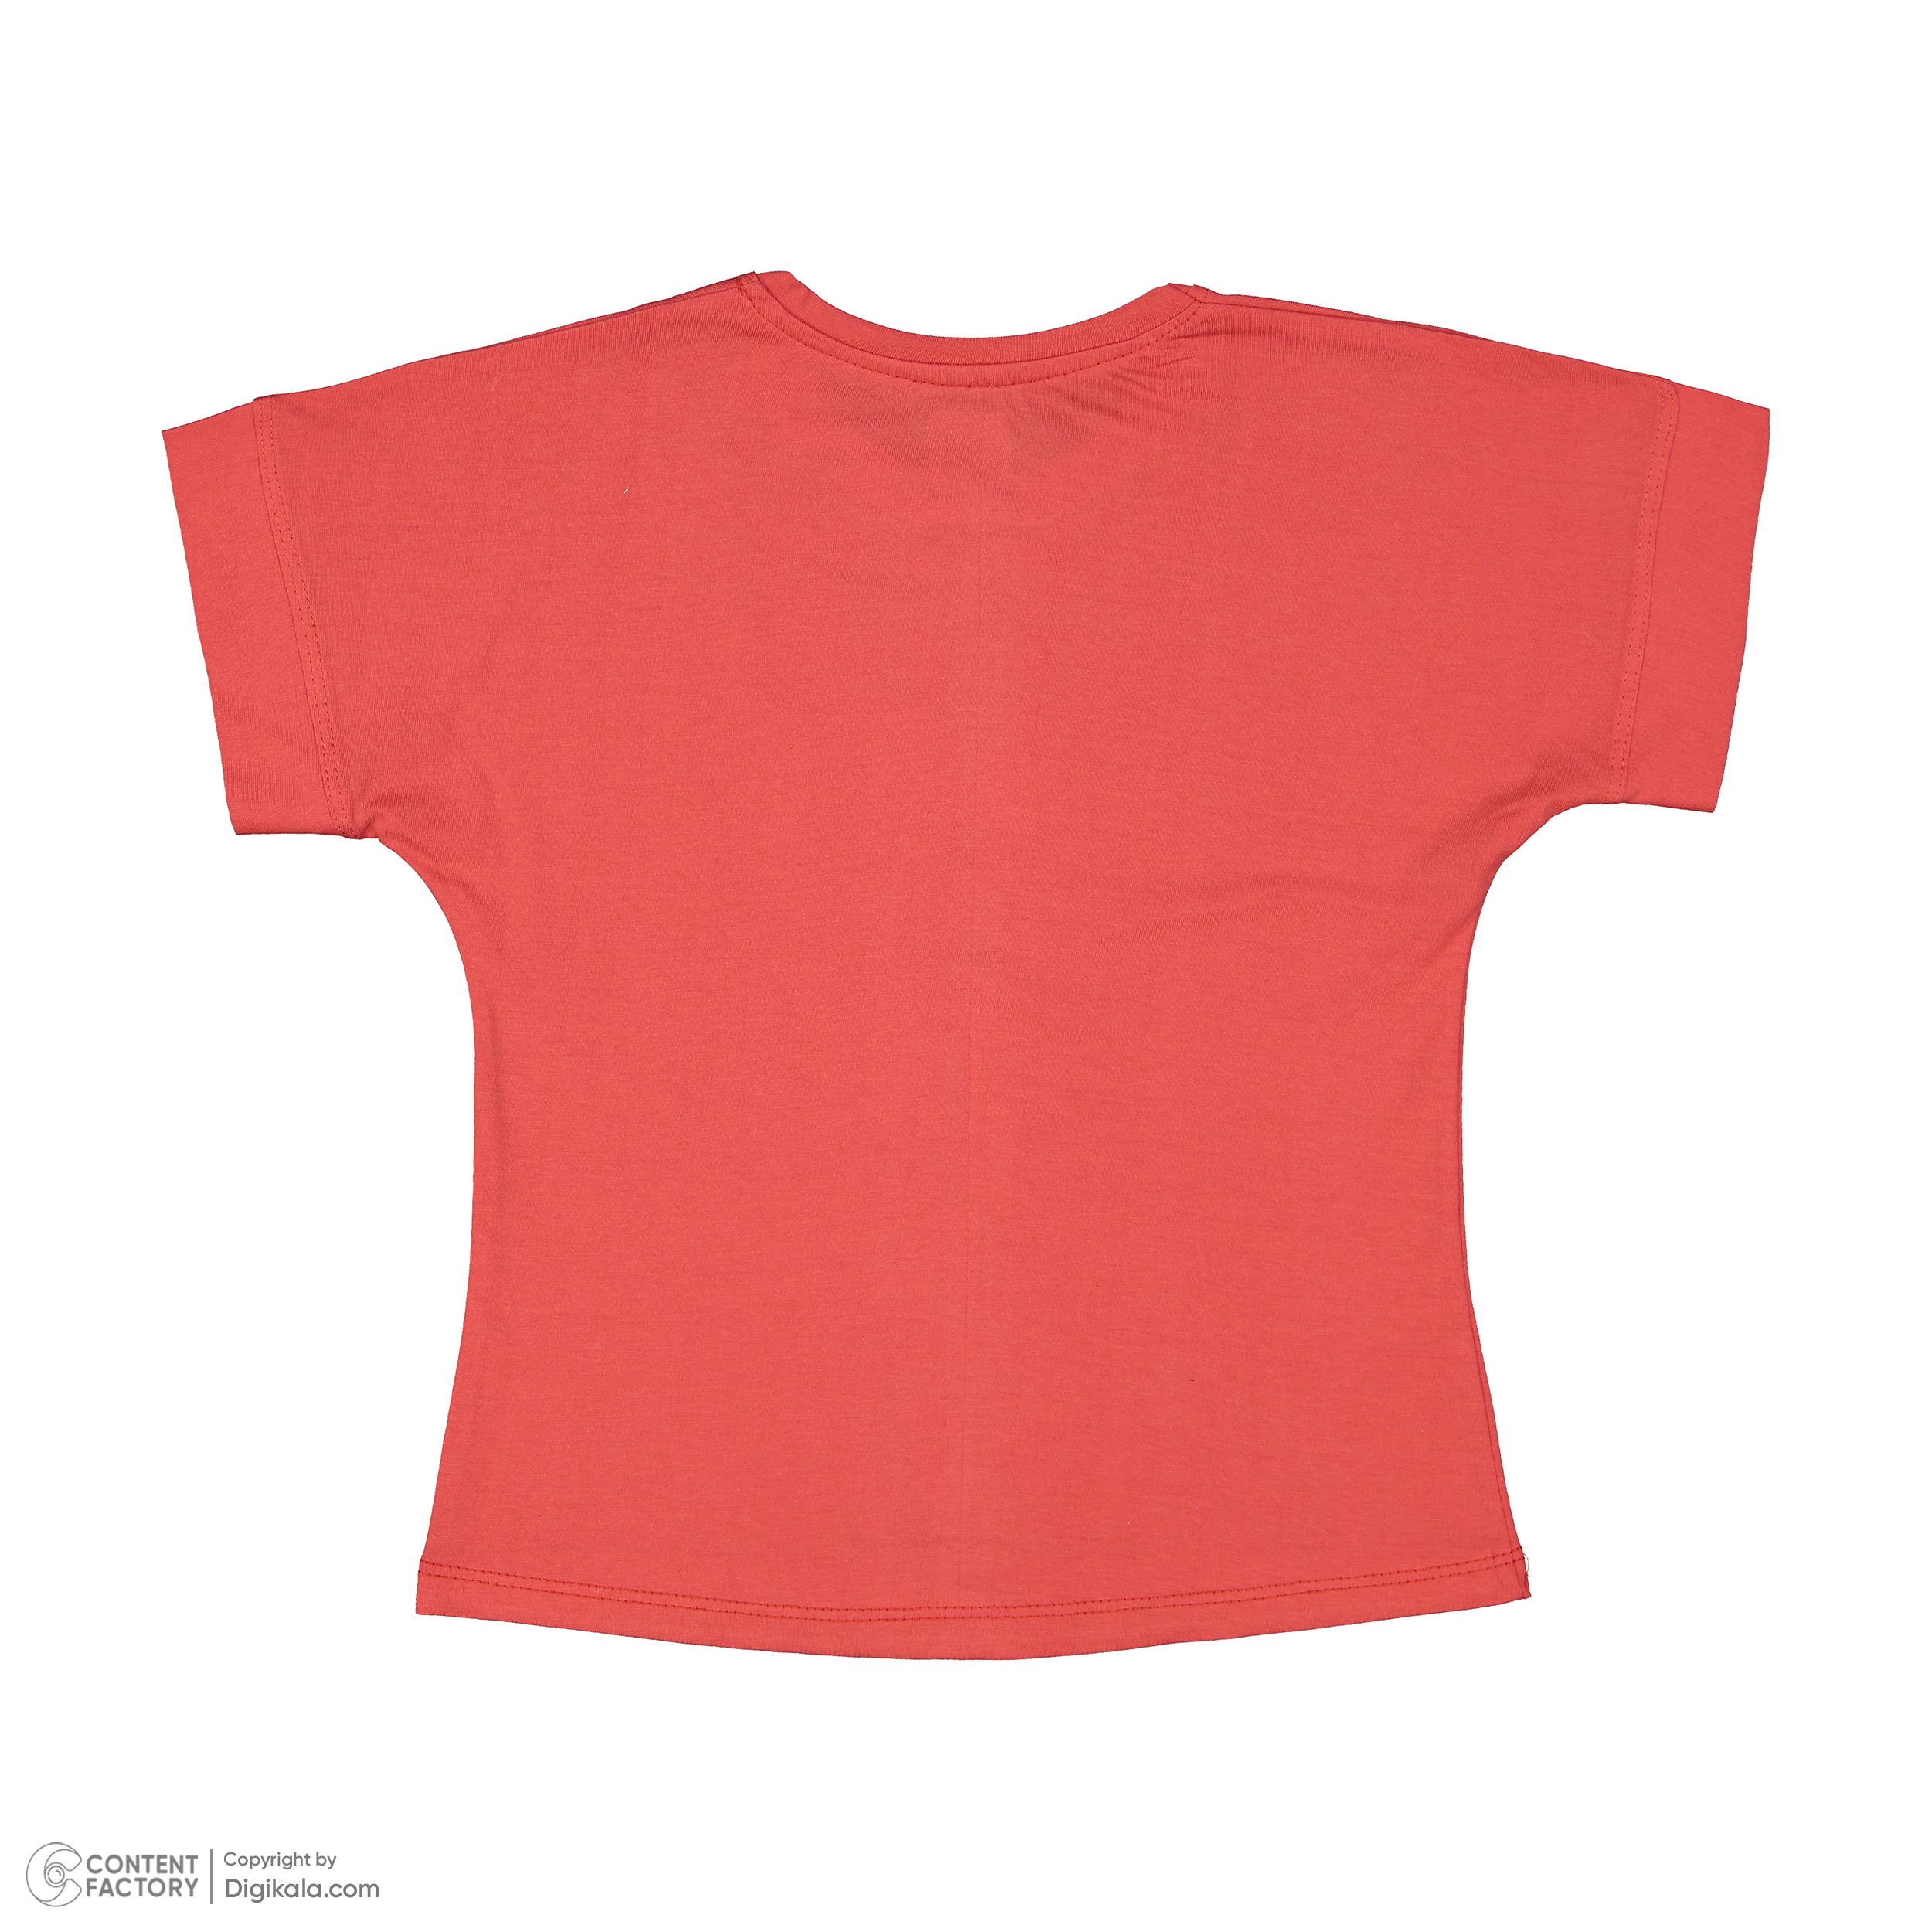 ست تی شرت آستین کوتاه و شلوارک دخترانه مادر مدل گاردن کد 92-25 رنگ گلبهی -  - 5